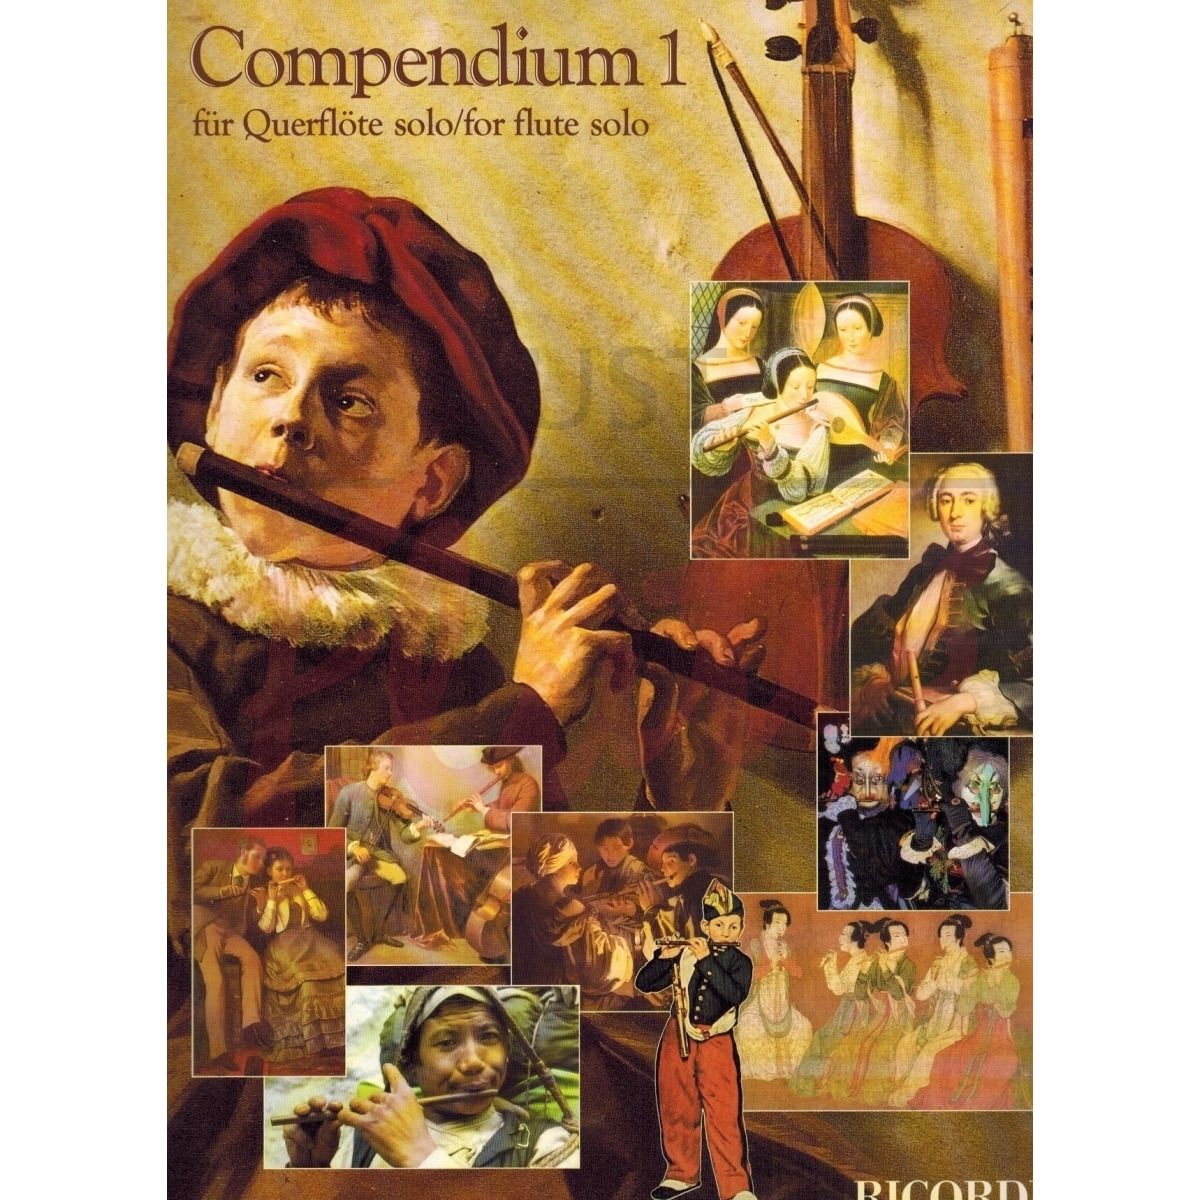 Compendium I